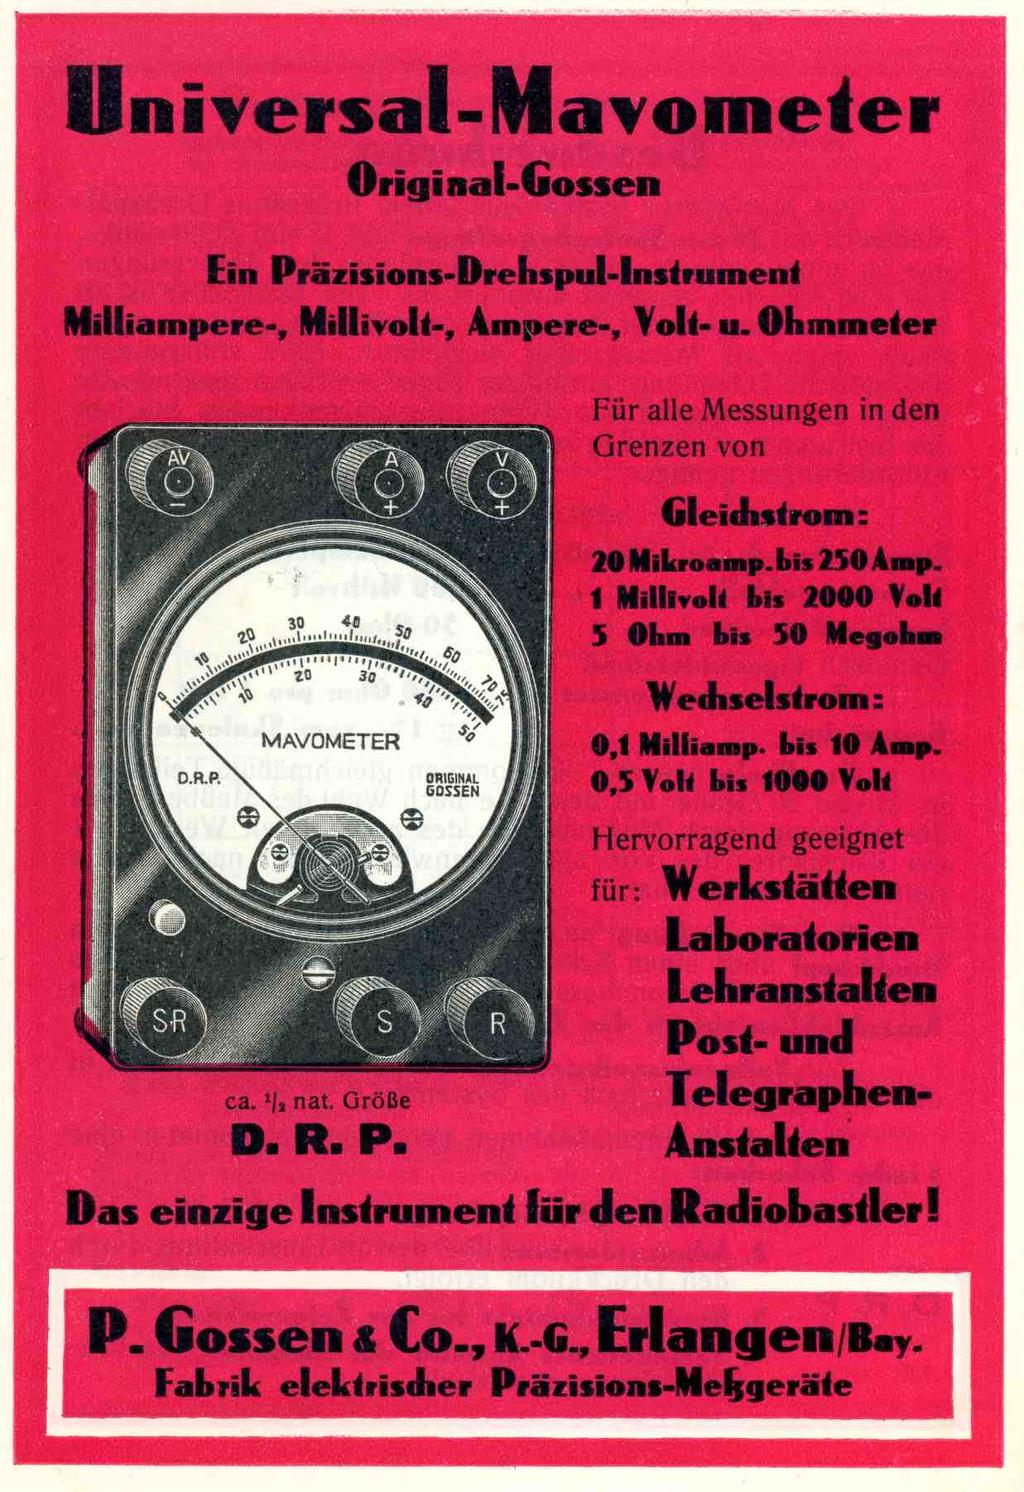 U niversal-m avom eter Original-Gossen Ein Präzisions-Drehspul-Instrument M illiam pere-, M illivolt-, Ampere-, Volt- u. Ohmmeter Für alle Messungen in den Grenzen von Gleichstrom: 20 Mikroamp.